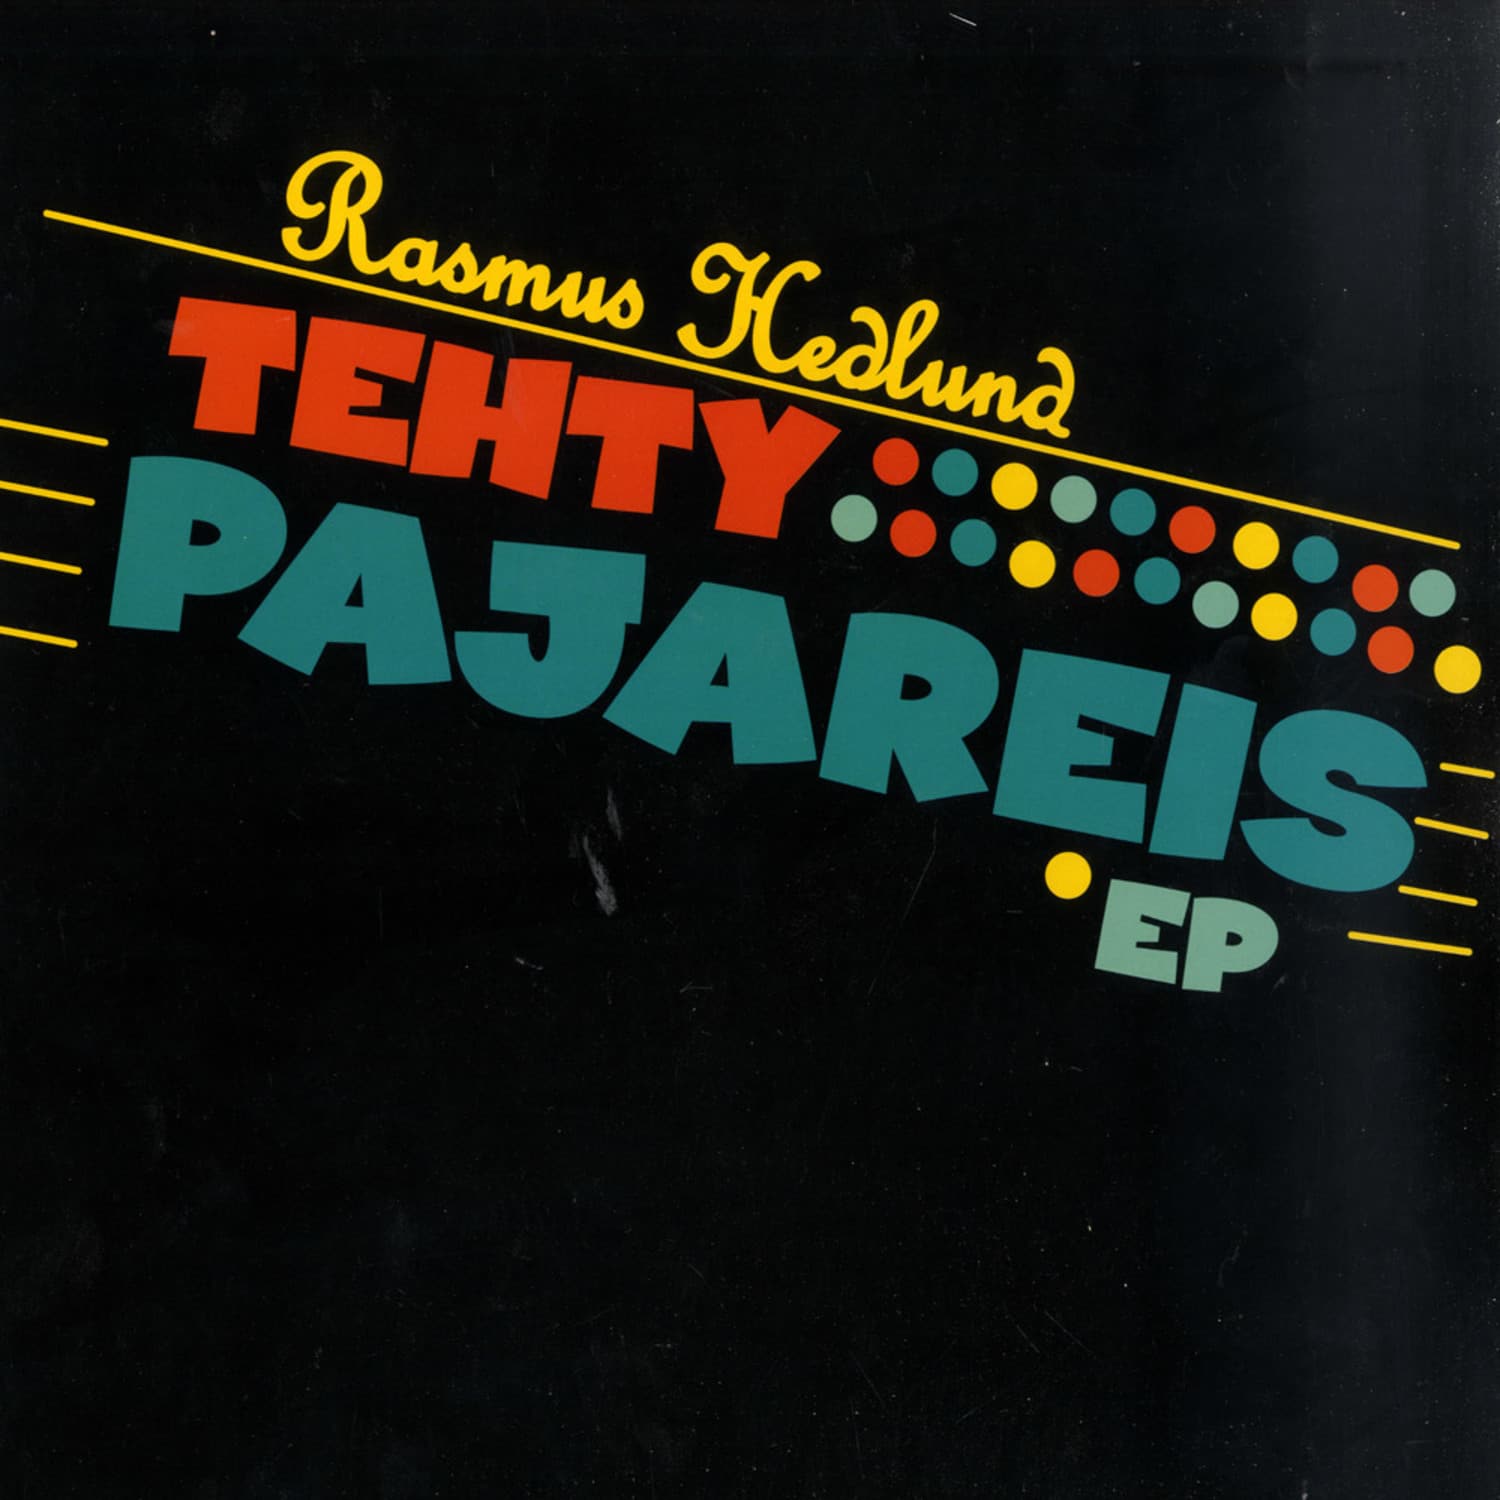 Rasmus Hedlund - TEHTY PAJAREIS EP